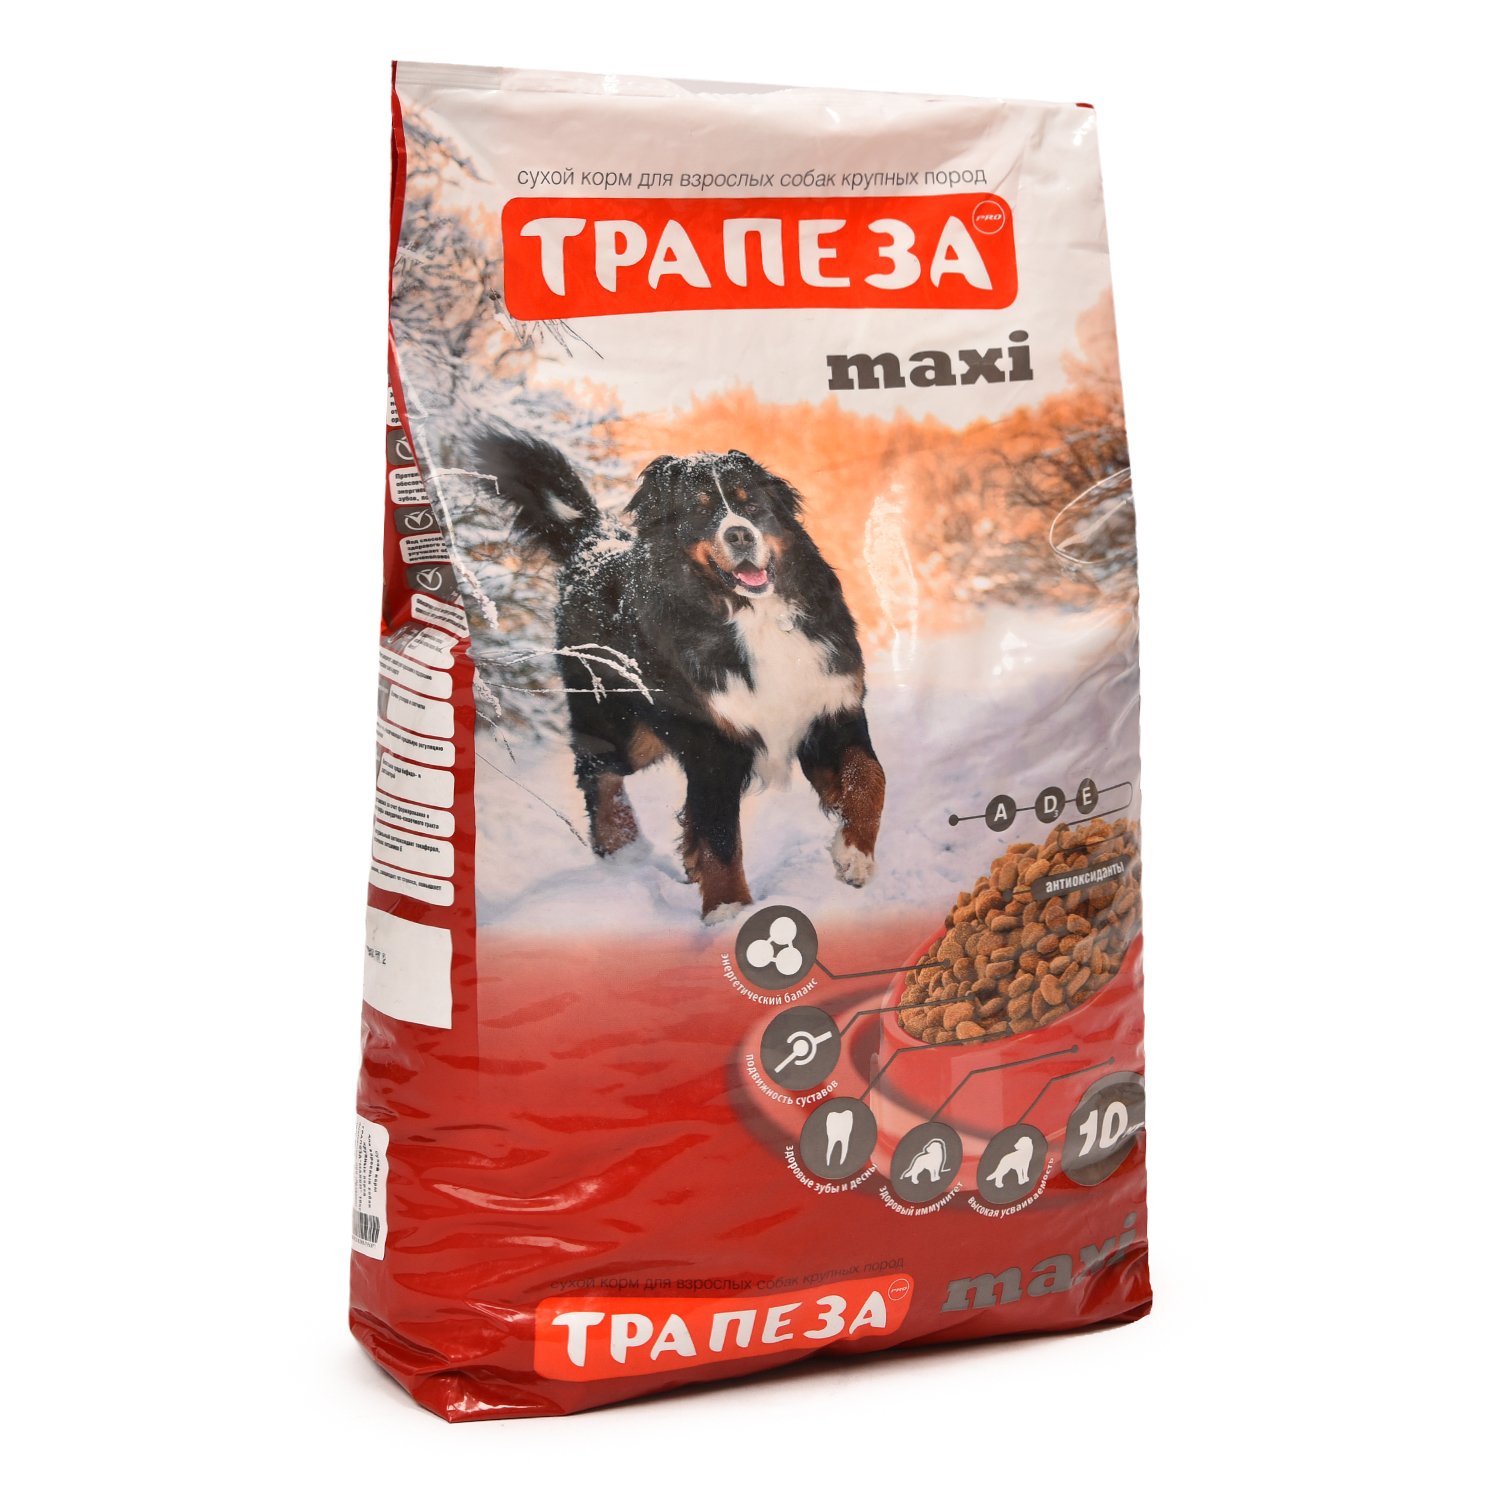 Сухой корм “Трапеза” макси для собак крупных пород, 10кг